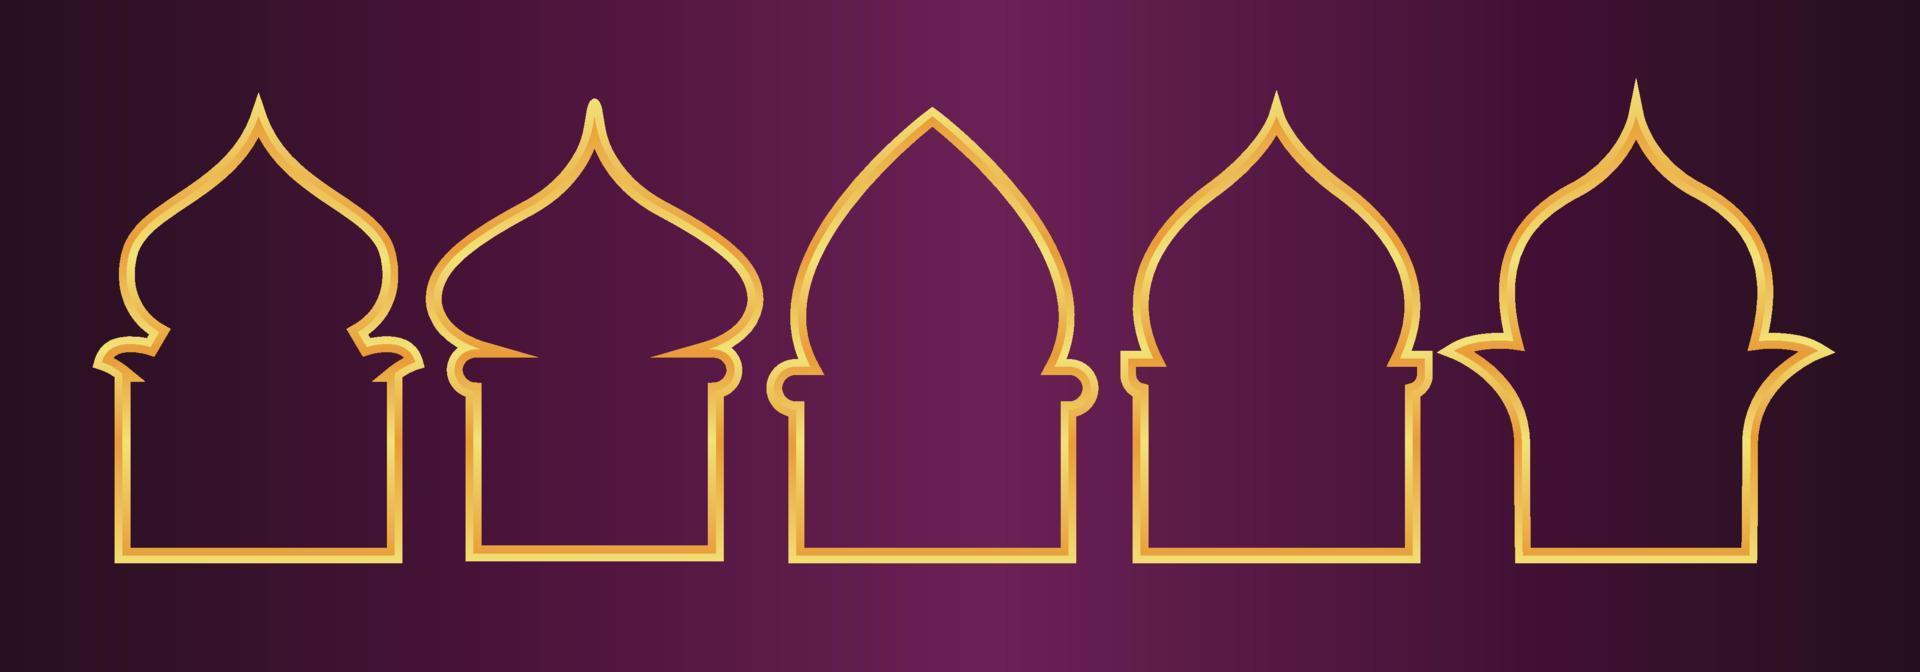 Golddesigset von arabischen Fenstern für Ramadan Kareem-Vorlage vektor